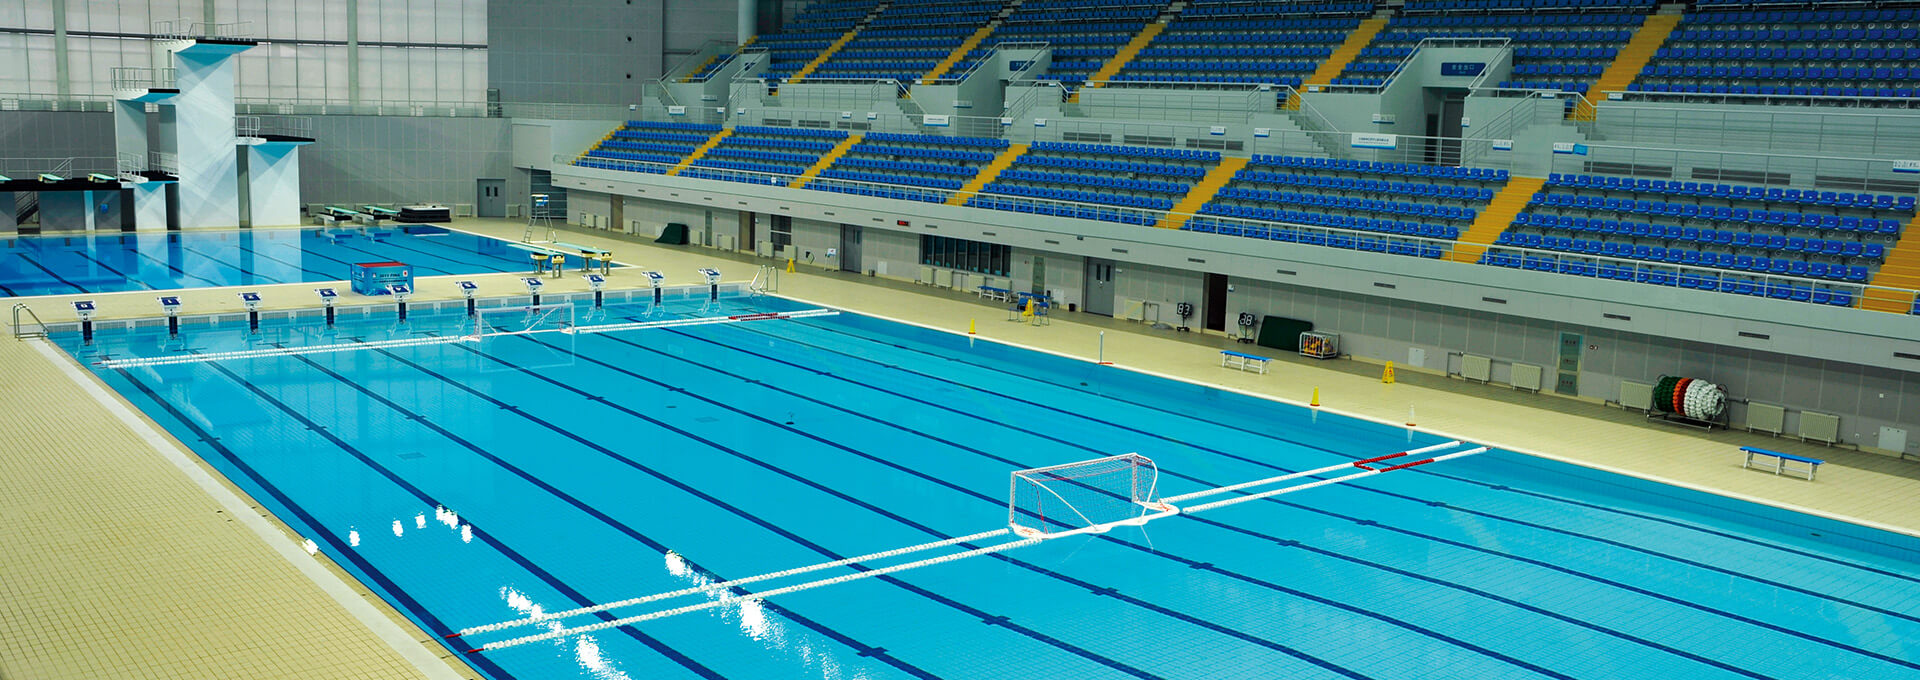 天津奥体水上运动中心游泳馆泳池设备项目